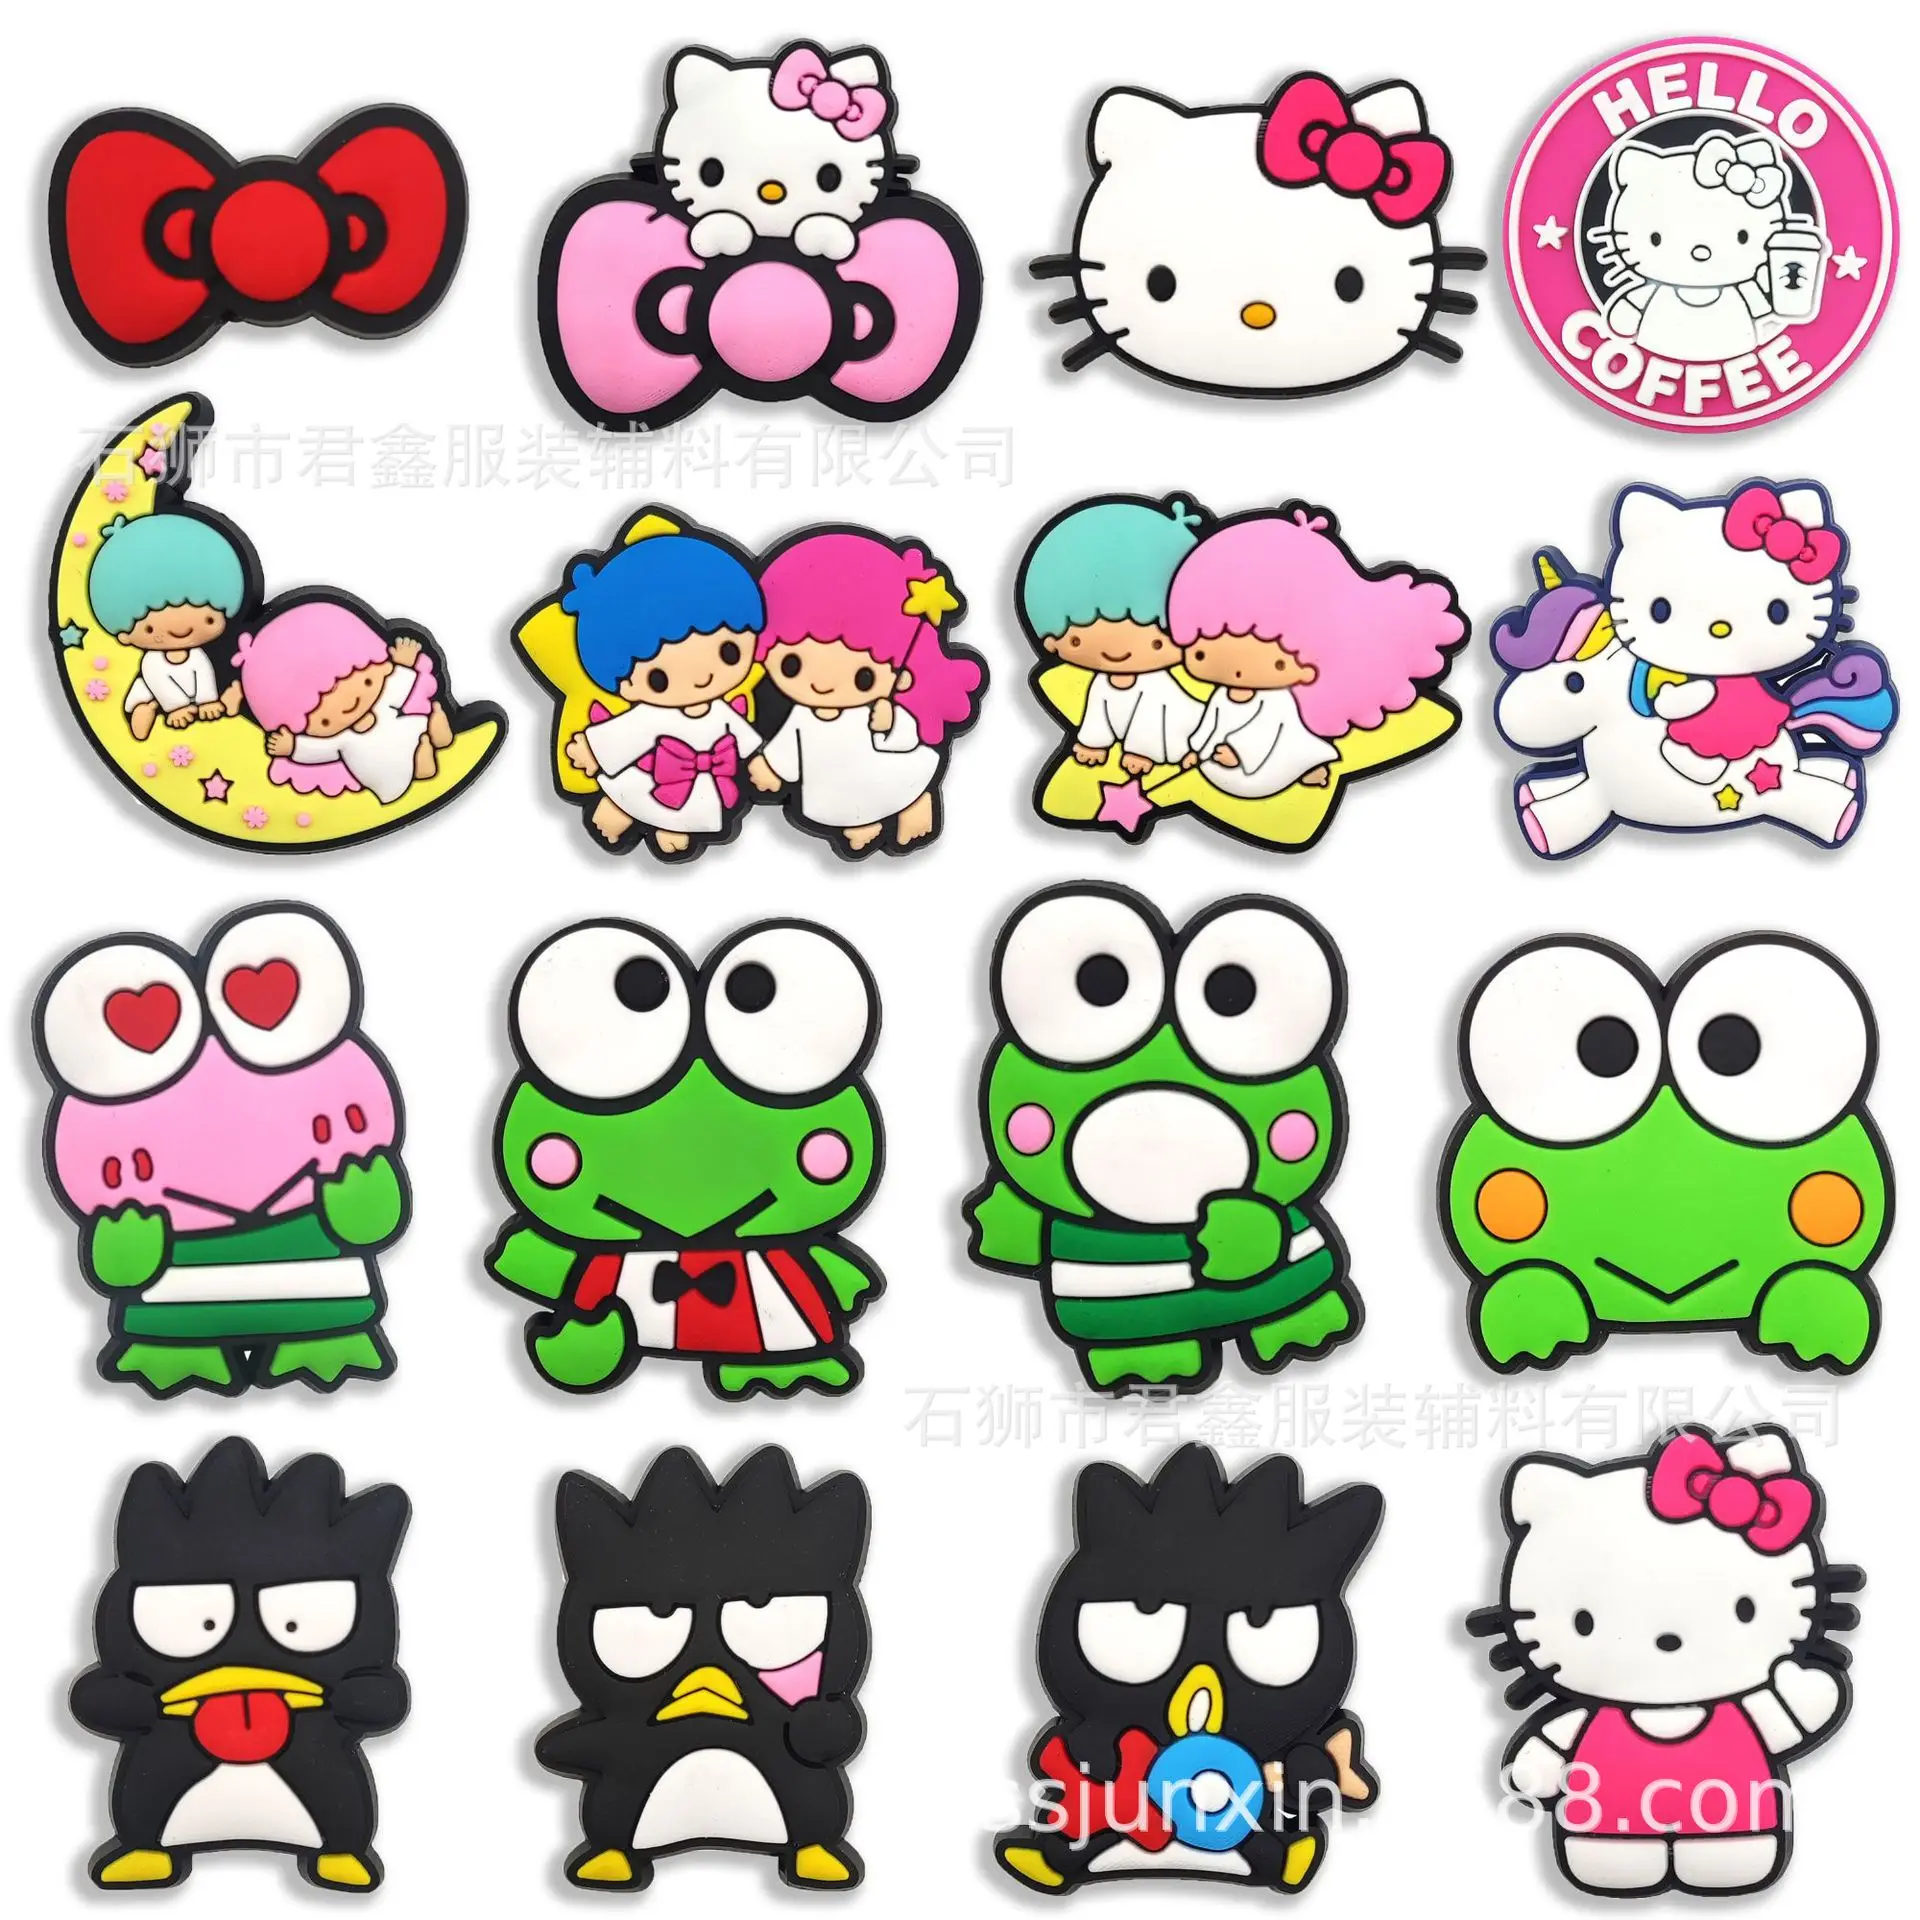 2023 neue Sanrio Charakter PVC Schuh Schnalle Hallo Kitty Melody Kuromi Großhandel Verfügbar Verkauf Cartoons Dekorationen Kinder Geschenke